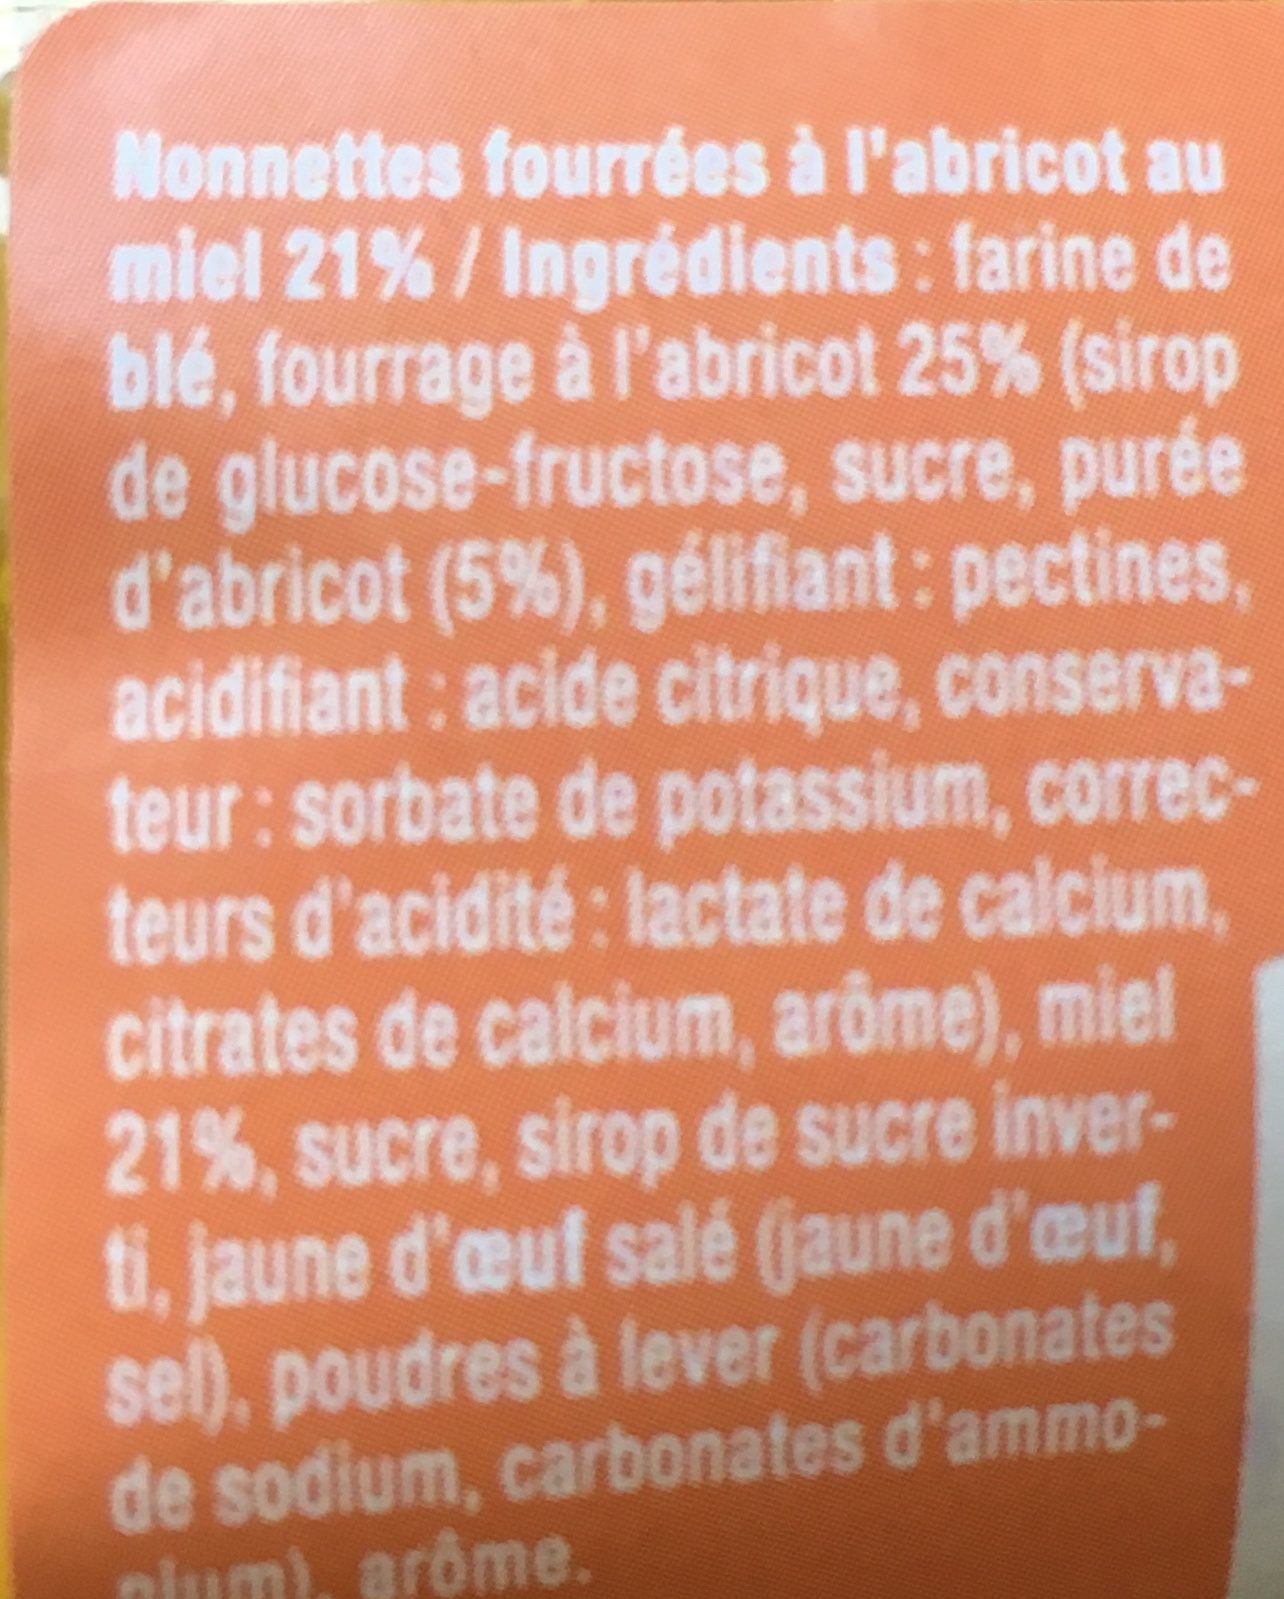 Nonnettes fourrées Au Miel🍯 et Abricots - Ingredients - fr